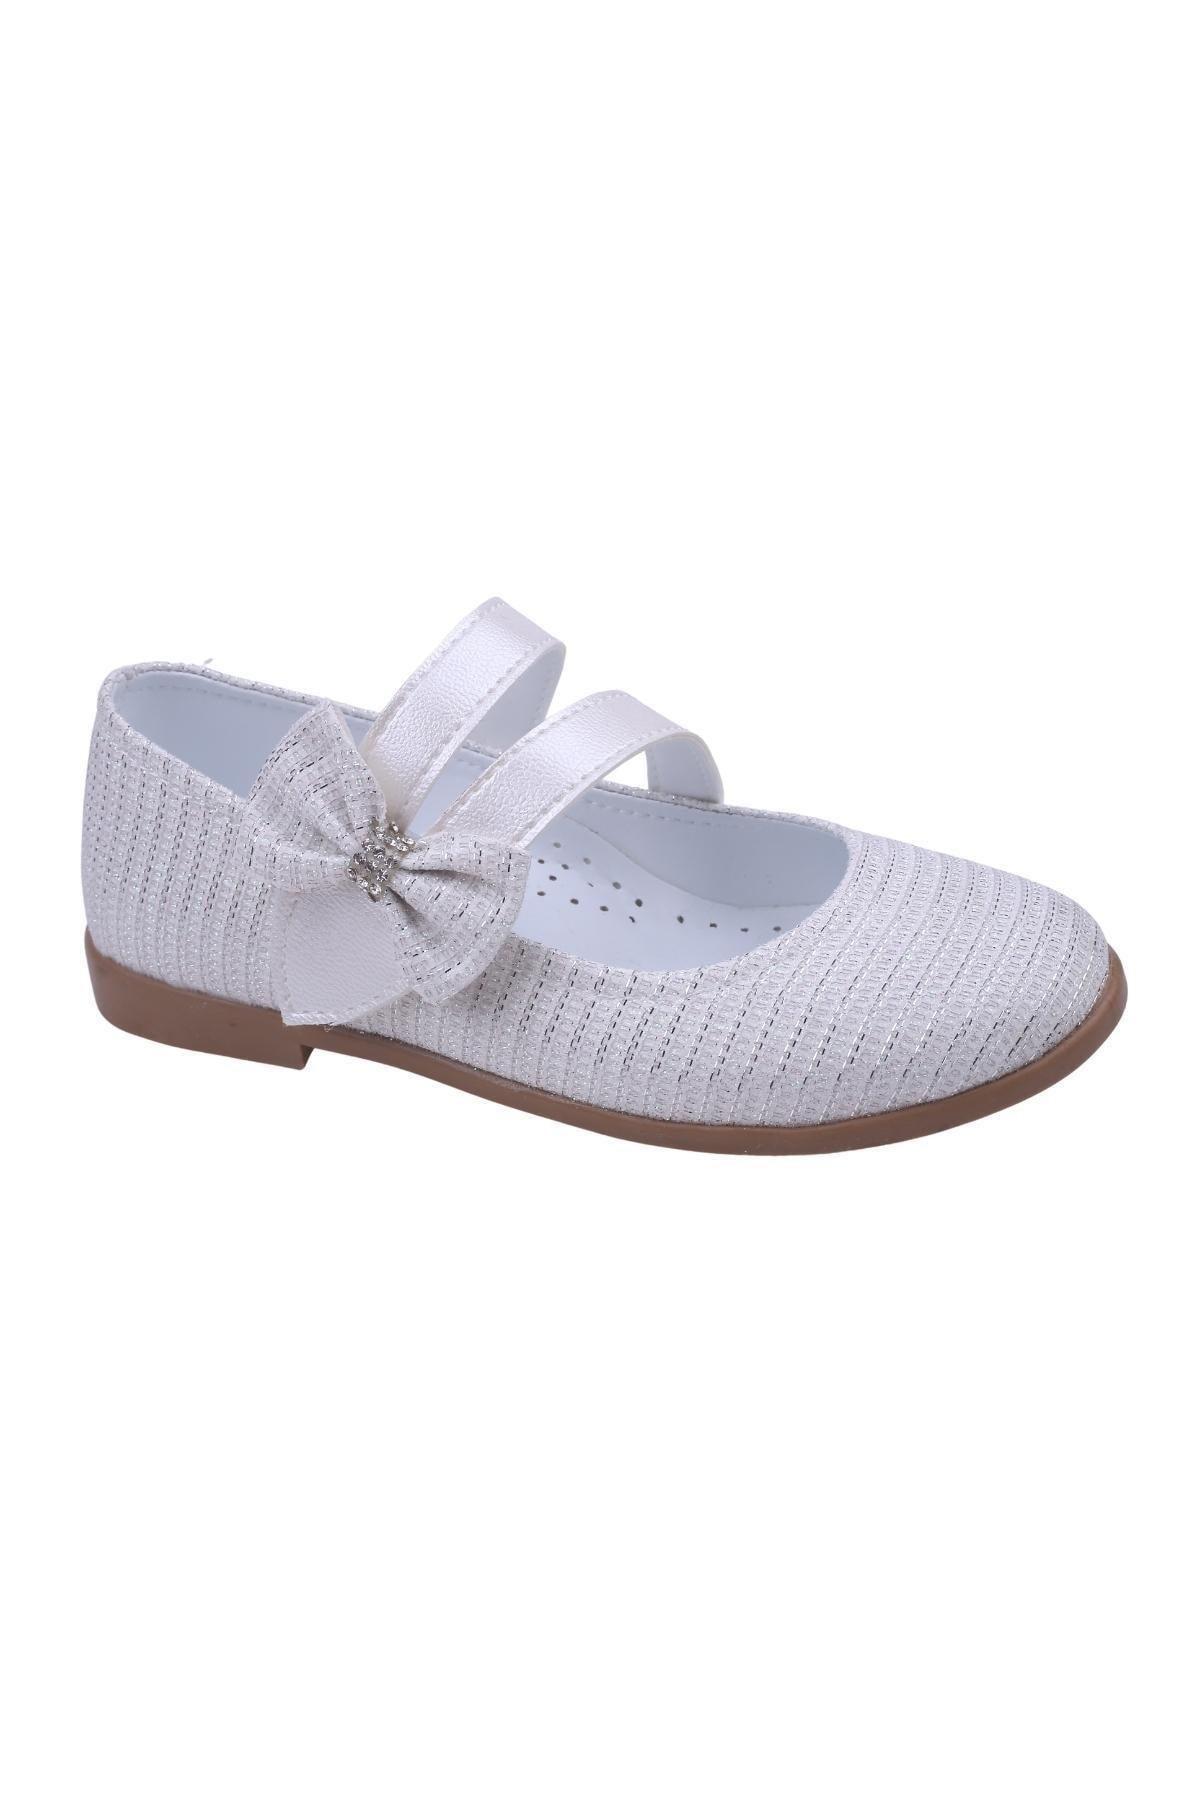 Papuçsepeti Papuç Sepeti Ortaç 2081 Kız Çocuk Balerin Fiyonk Cırtlı Babet Ayakkabı